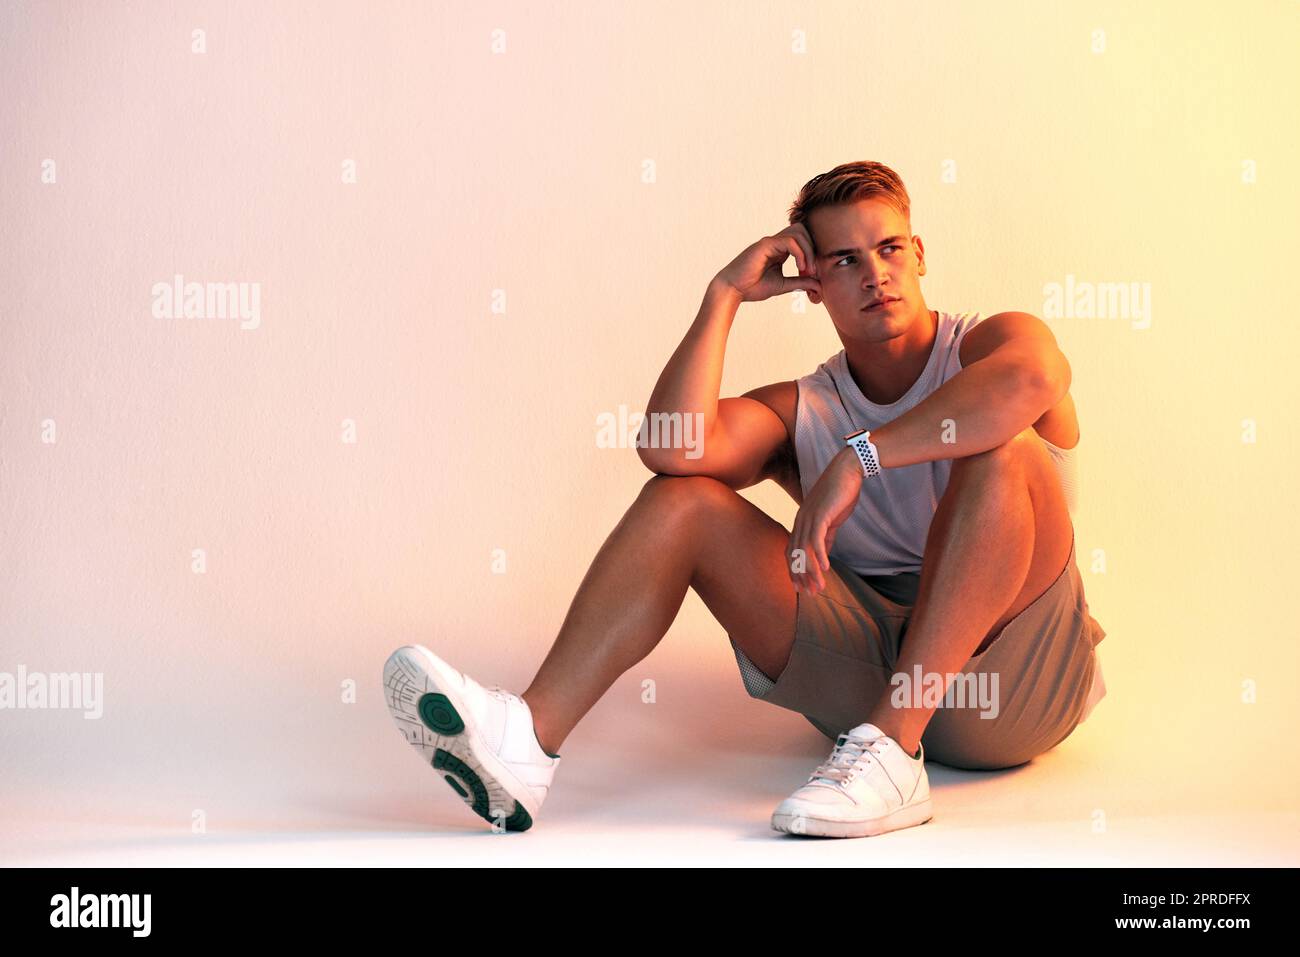 Travaillez plus que votre corps. Photo en studio d'un jeune athlète de sexe masculin à l'aspect réfléchi sur un fond multicolore. Banque D'Images